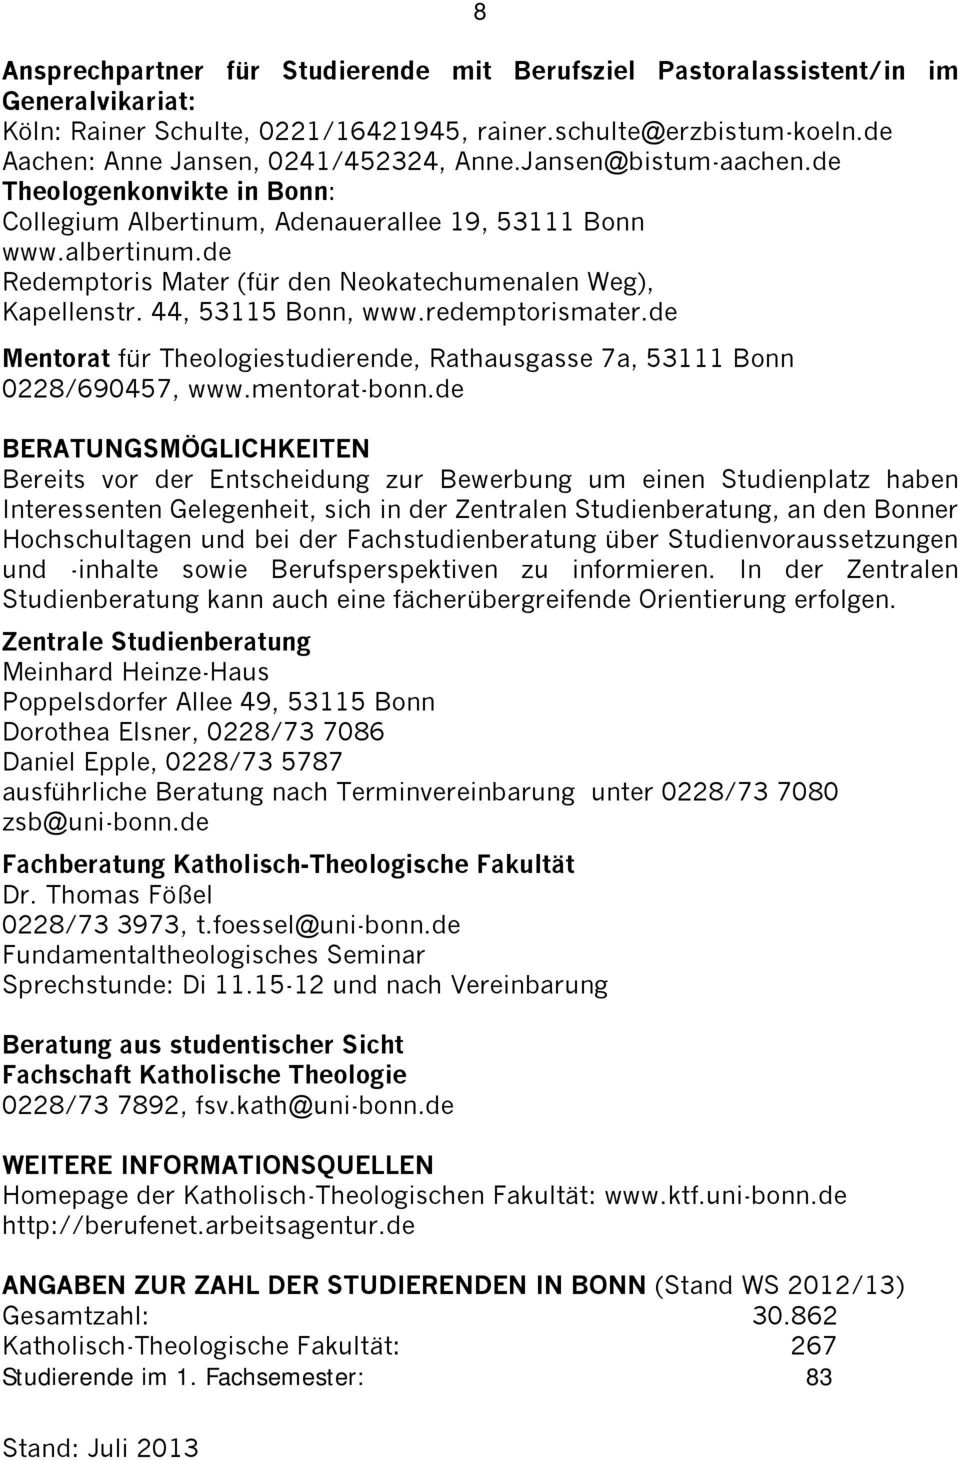 44, 53115 Bonn, www.redemptorismater.de Mentorat für Theologiestudierende, Rathausgasse 7a, 53111 Bonn 0228/690457, www.mentorat-bonn.